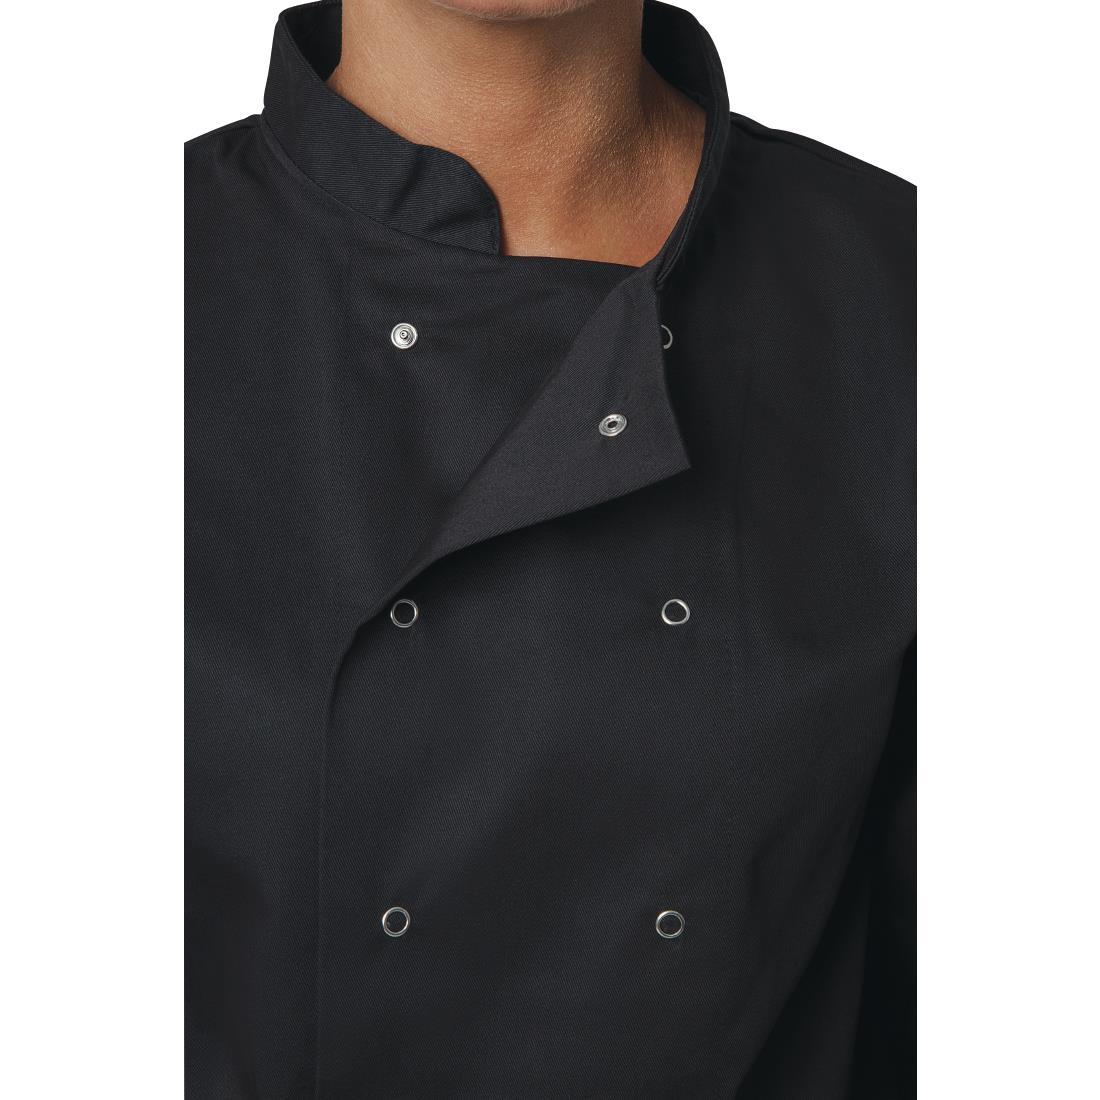 Whites Vegas Unisex Chefs Jacket Long Sleeve Black 5XL - A438-5XL  - 4